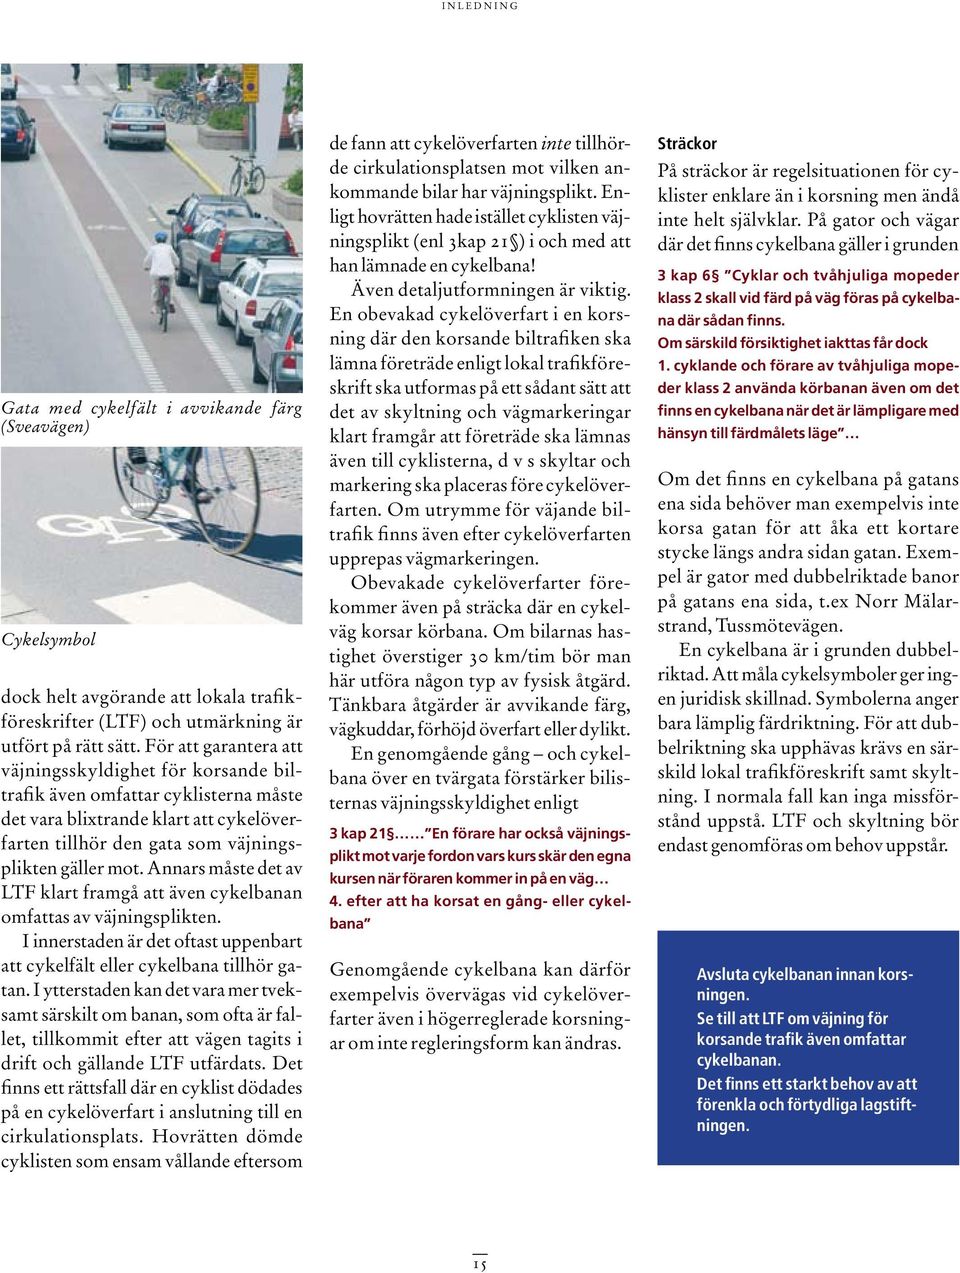 Annars måste det av LTF klart framgå att även cykelbanan omfattas av väjningsplikten. I innerstaden är det oftast uppenbart att cykelfält eller cykelbana tillhör gatan.